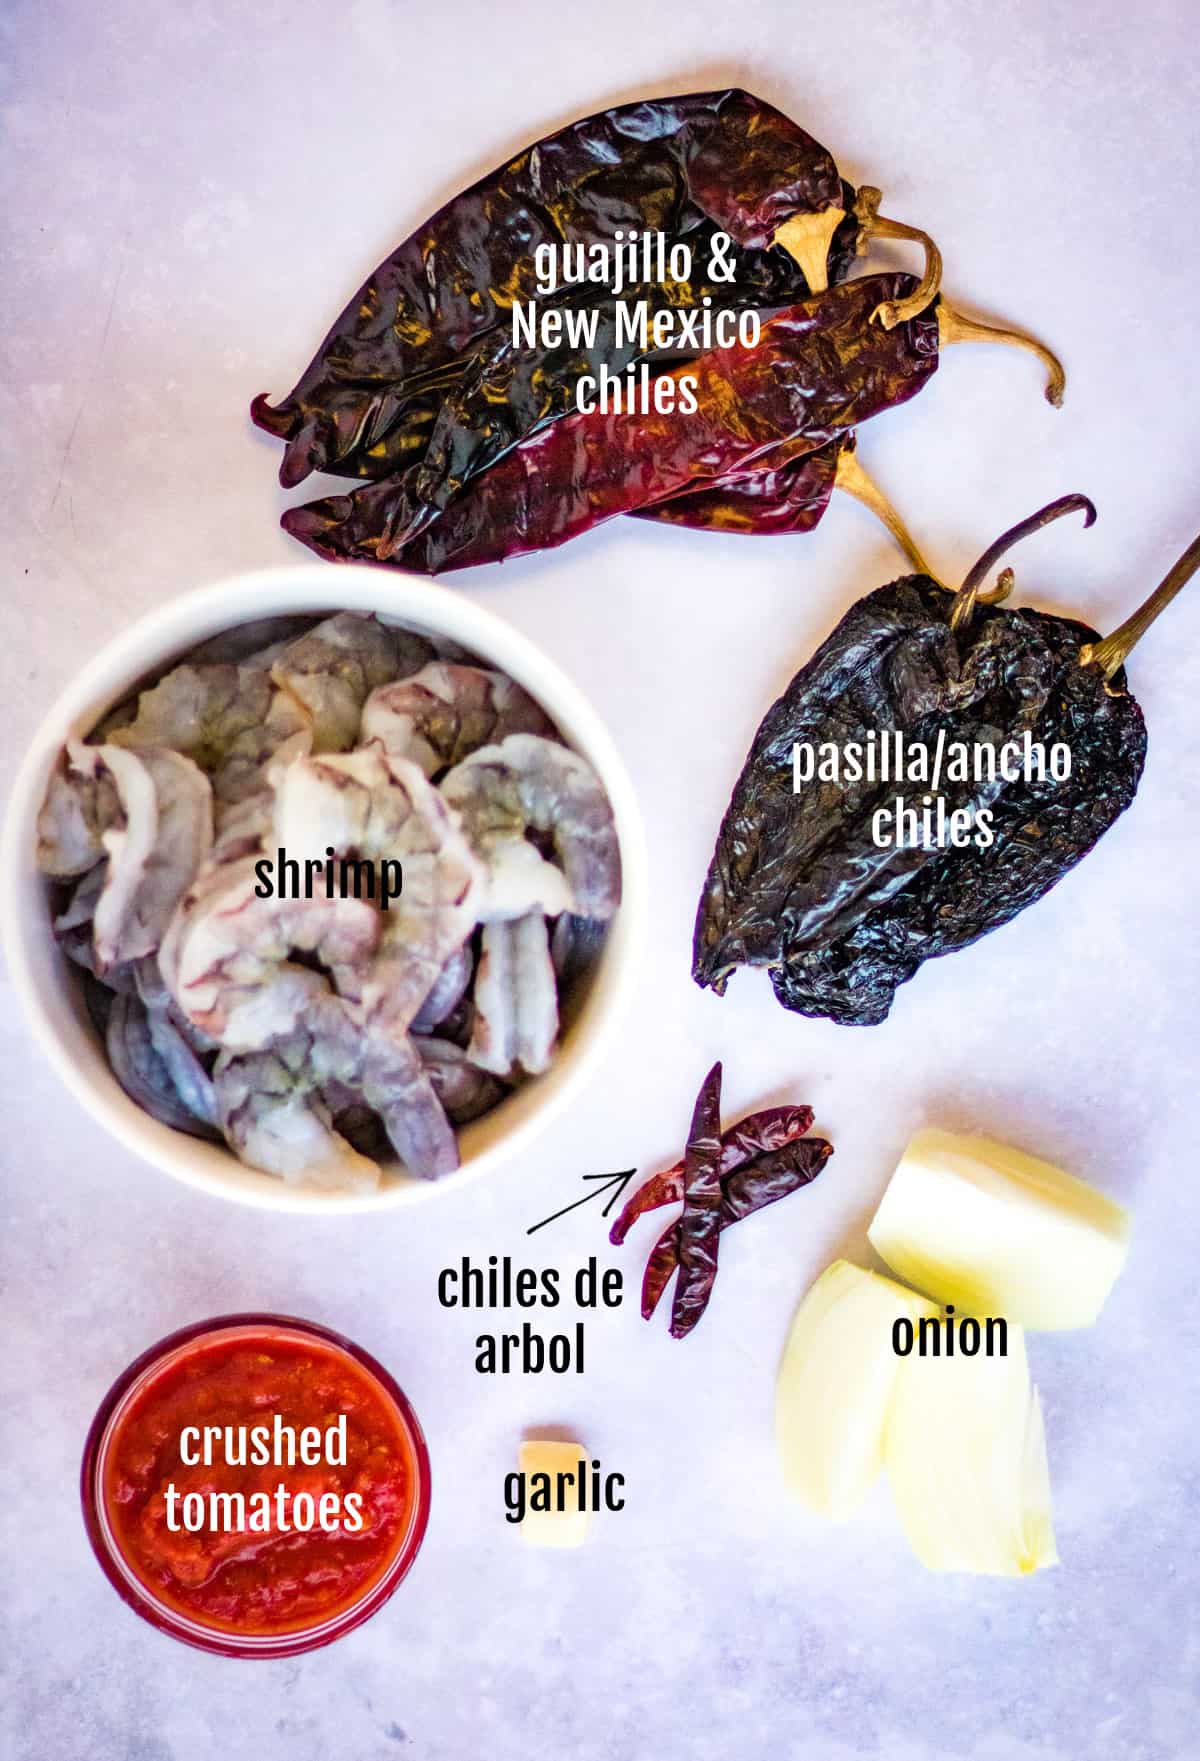 overhead shot of 4 different types of chiles: pasilla/ancho, new mexico, guajillo, and de arbol. These are the chiles used in this camarones a la diabla recipe.